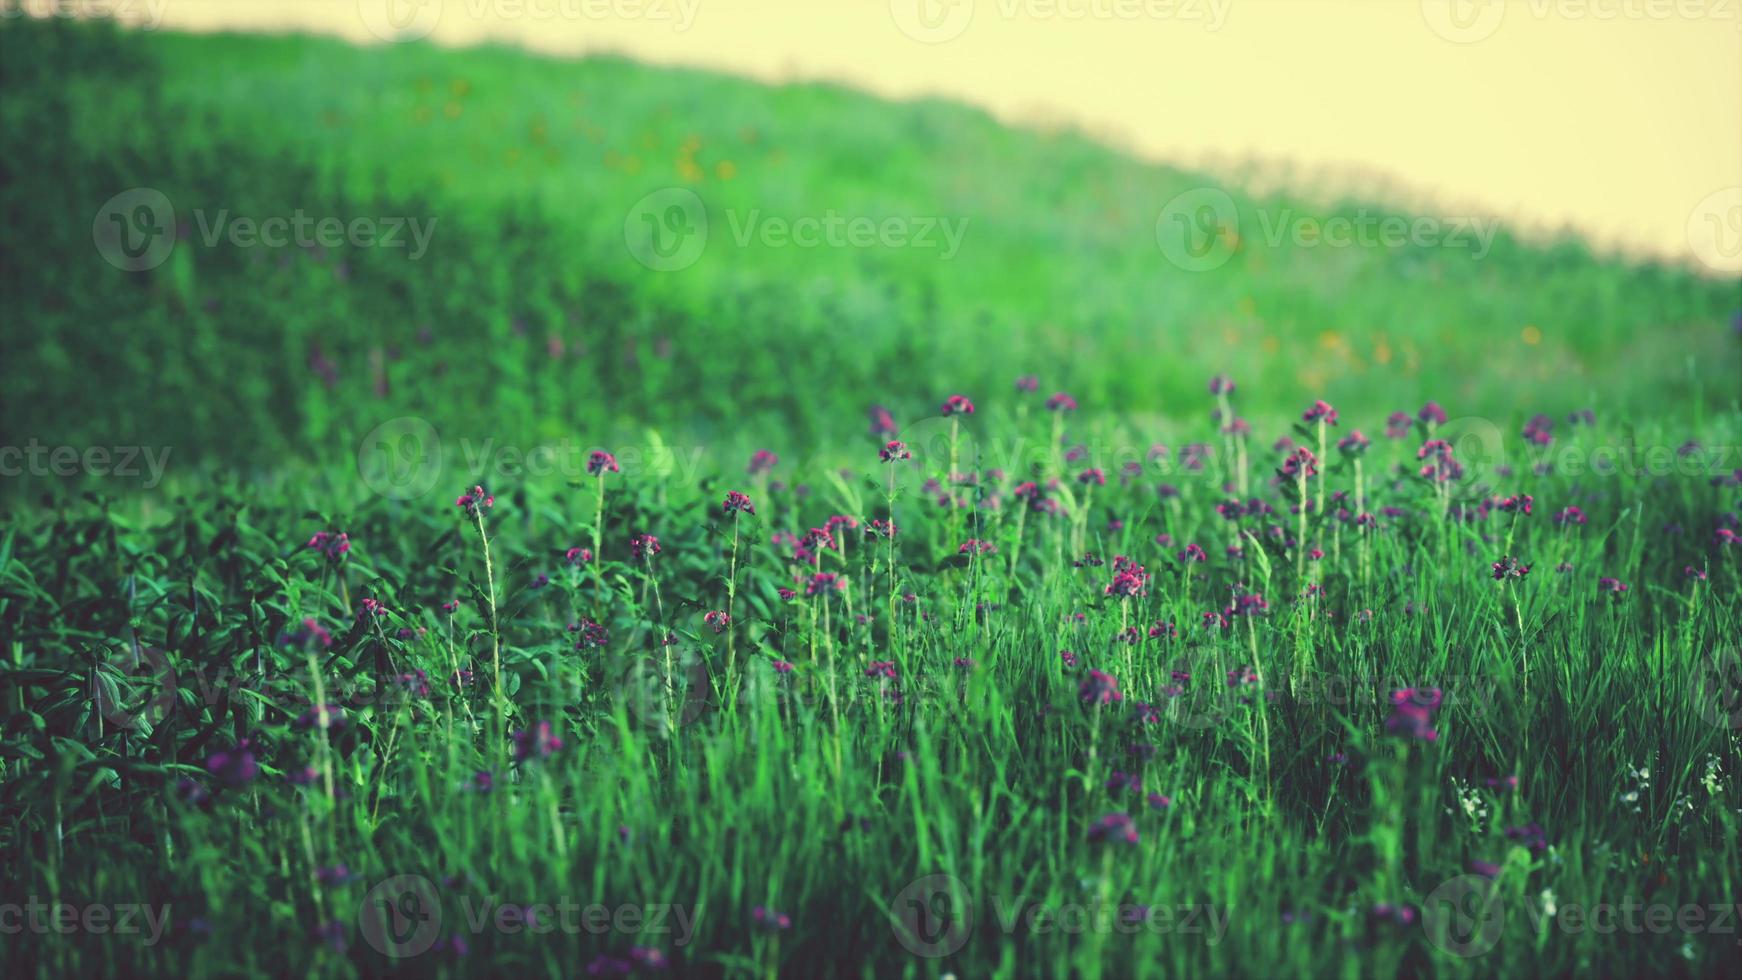 gras op het veld tijdens zonsopgang foto